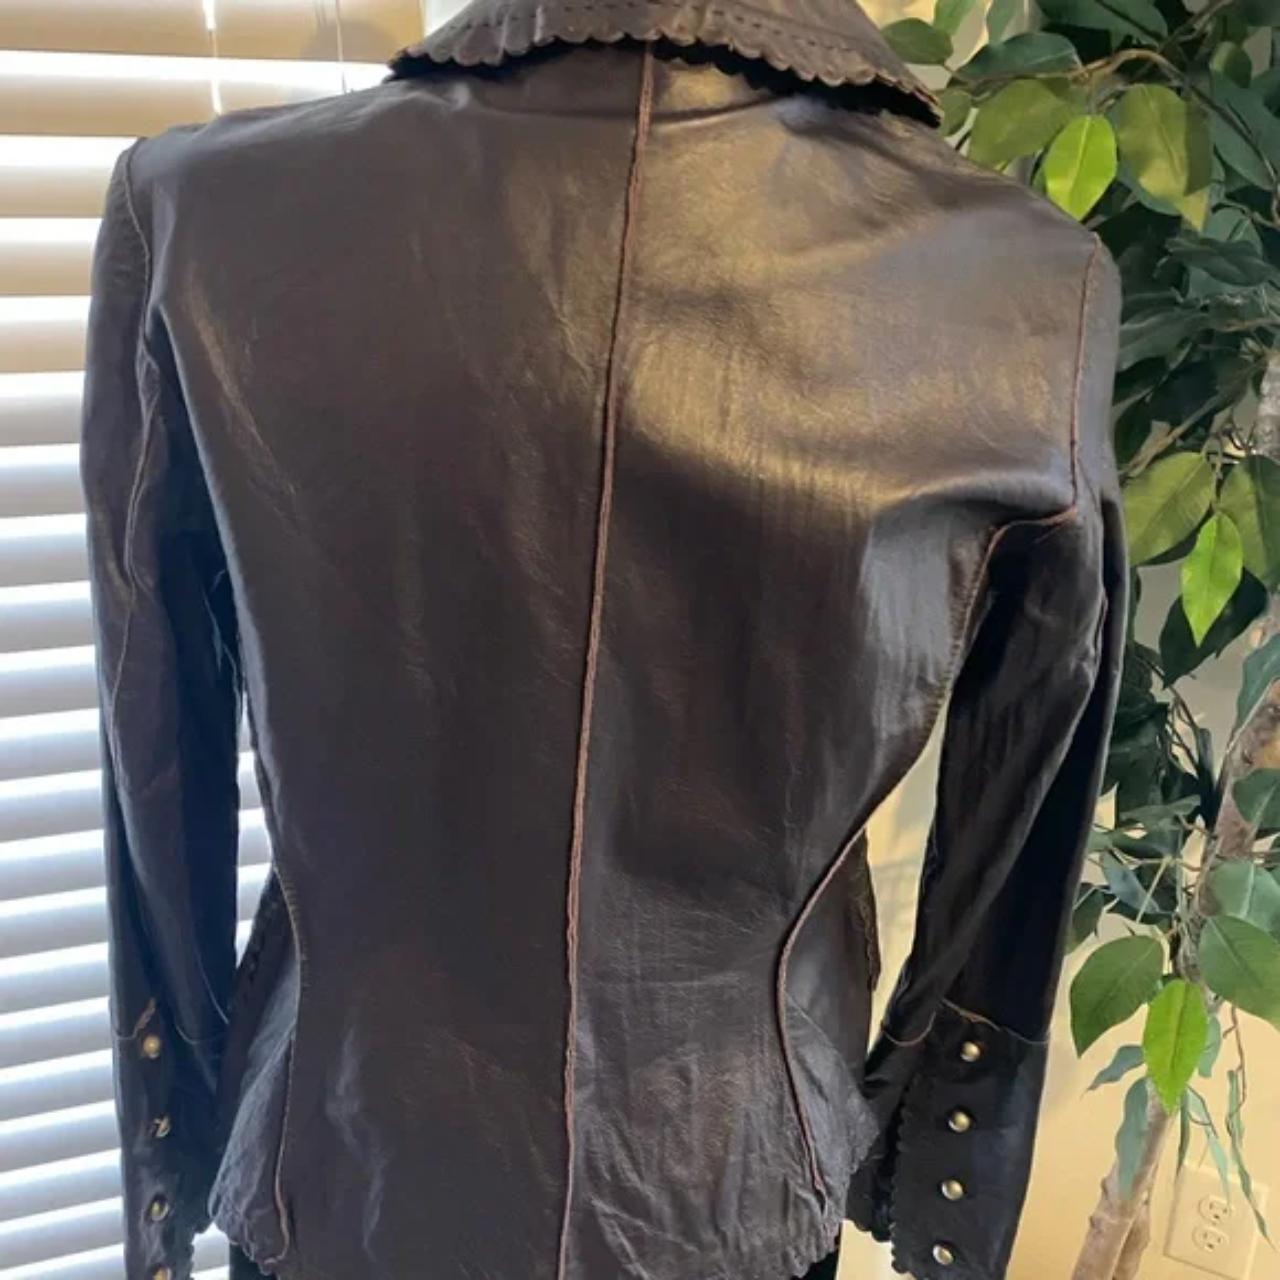 Cami Deep purple leather blazer 100% leather size 4.... - Depop